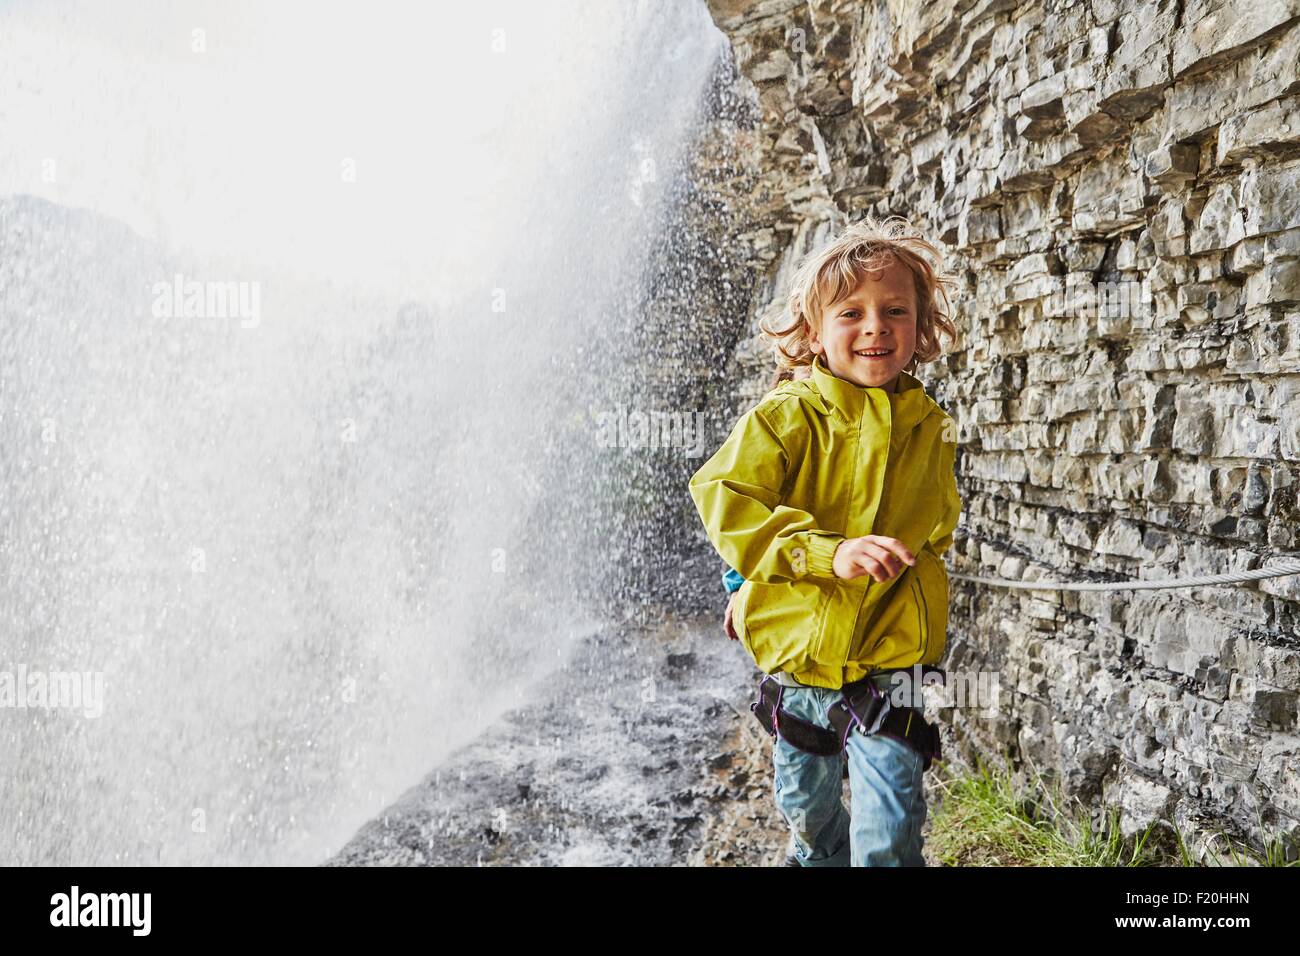 Muchacho caminando debajo de la cascada, sonriendo Foto de stock